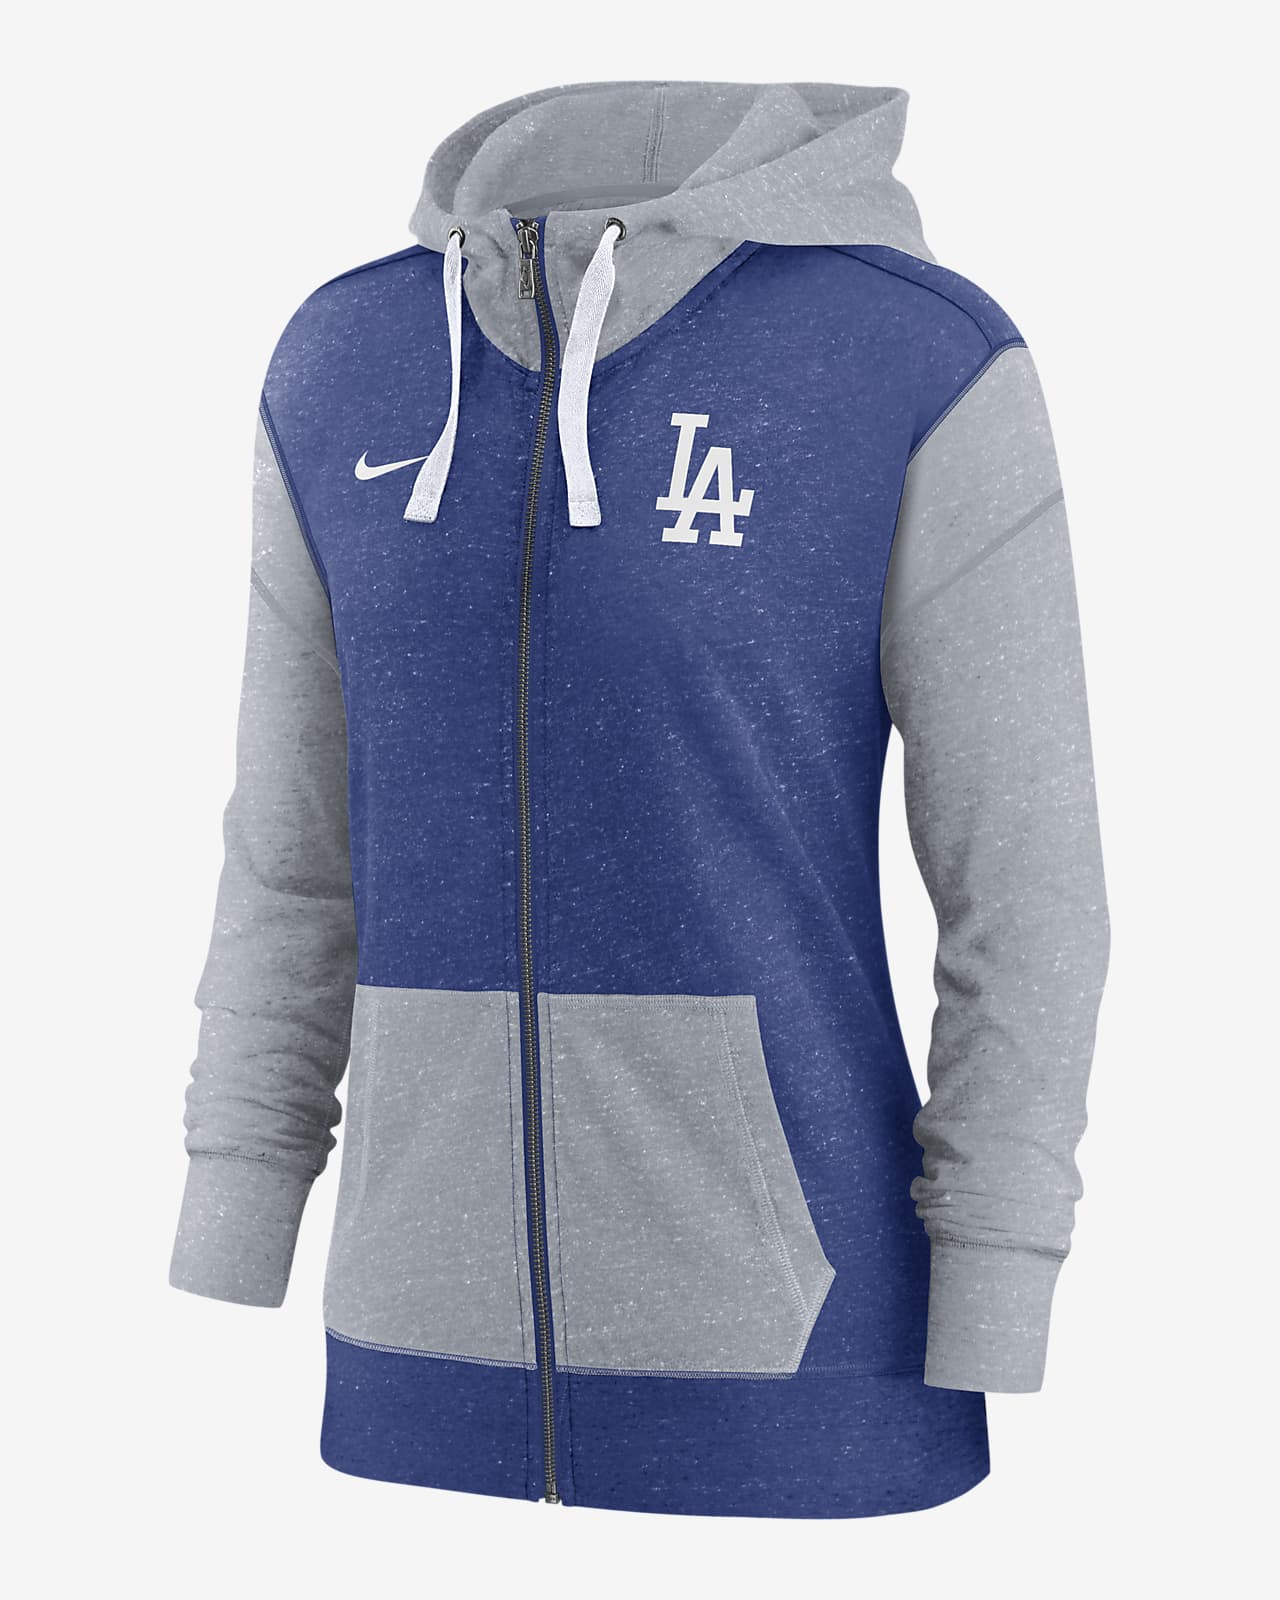 Nike Gym (MLB Los Angeles Dodgers) Women's Full-Zip Hoodie.